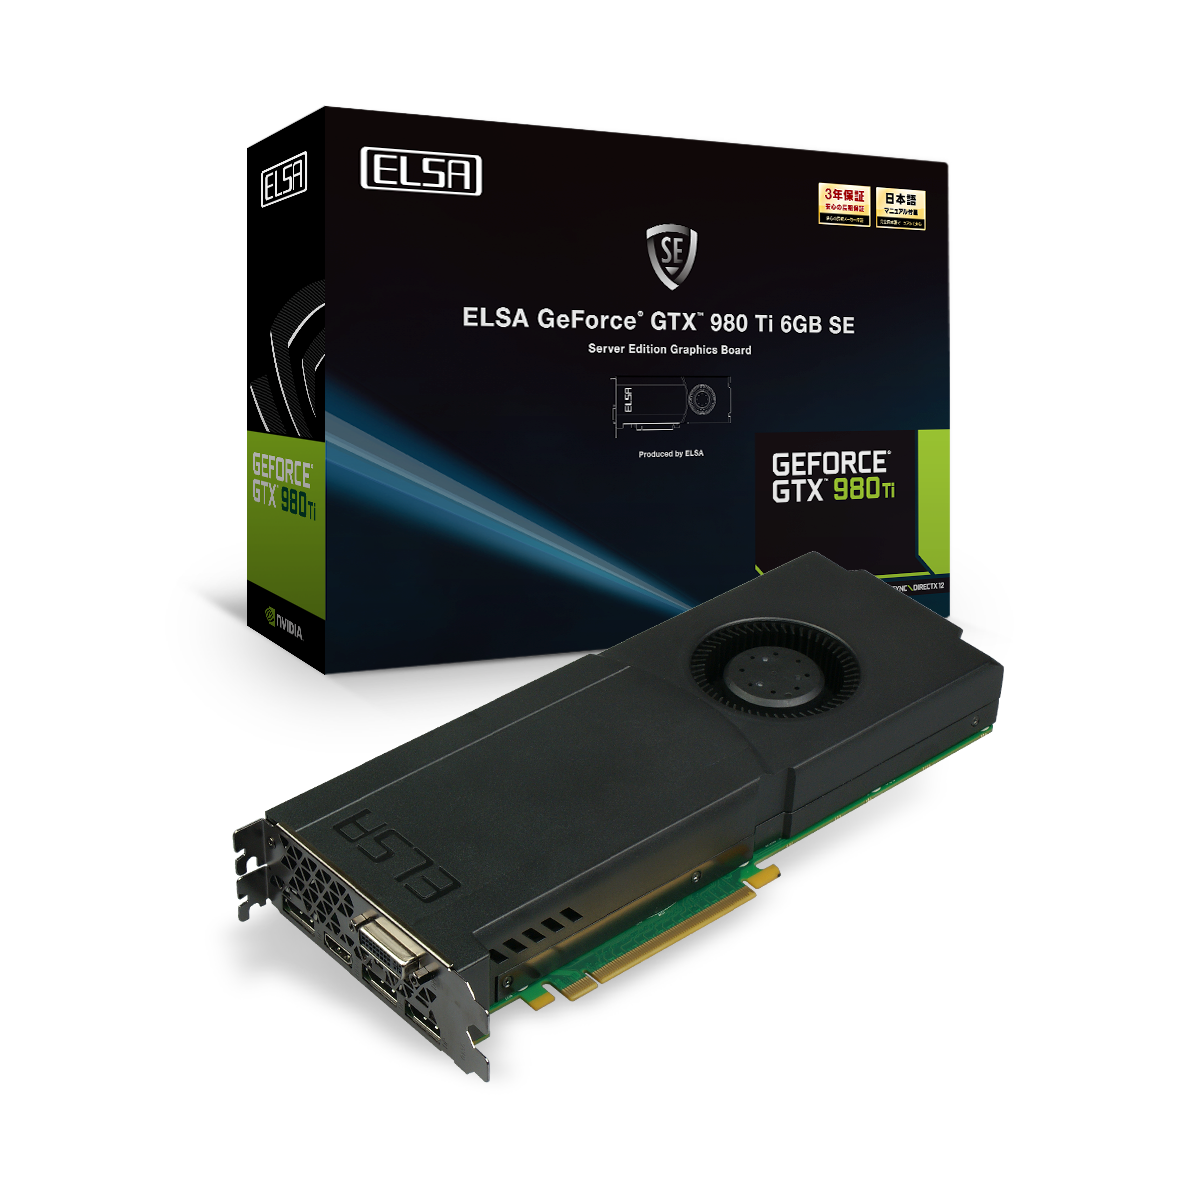 対象のGeForce® GTX™ グラフィックボードを購入して、UBISOFTの最新PCゲーム「ディビジョン」をゲットしよう。 - 株式会社 エルザ  ジャパン